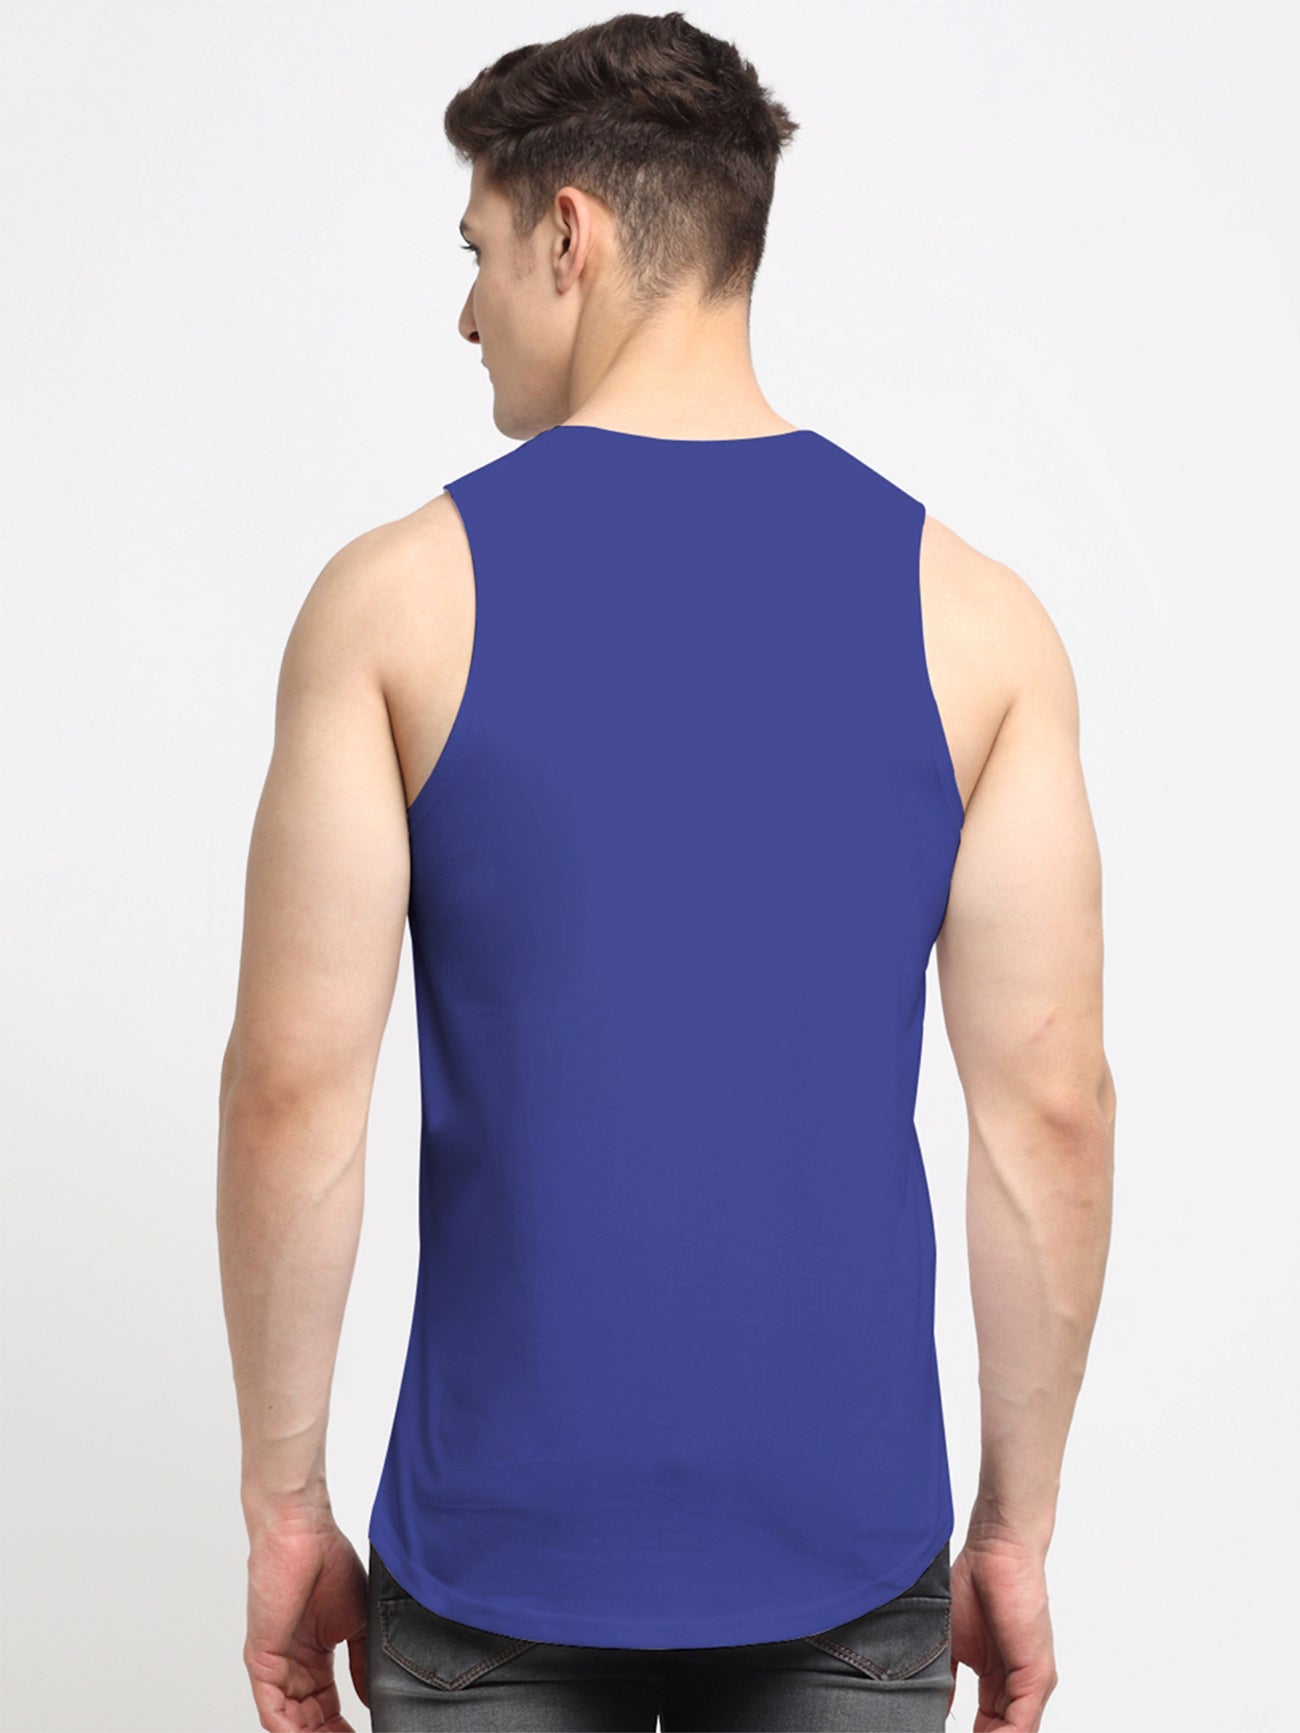 Men's Pack Of 2 Black & Navy Printed Sports Training Gym Vest - Friskers